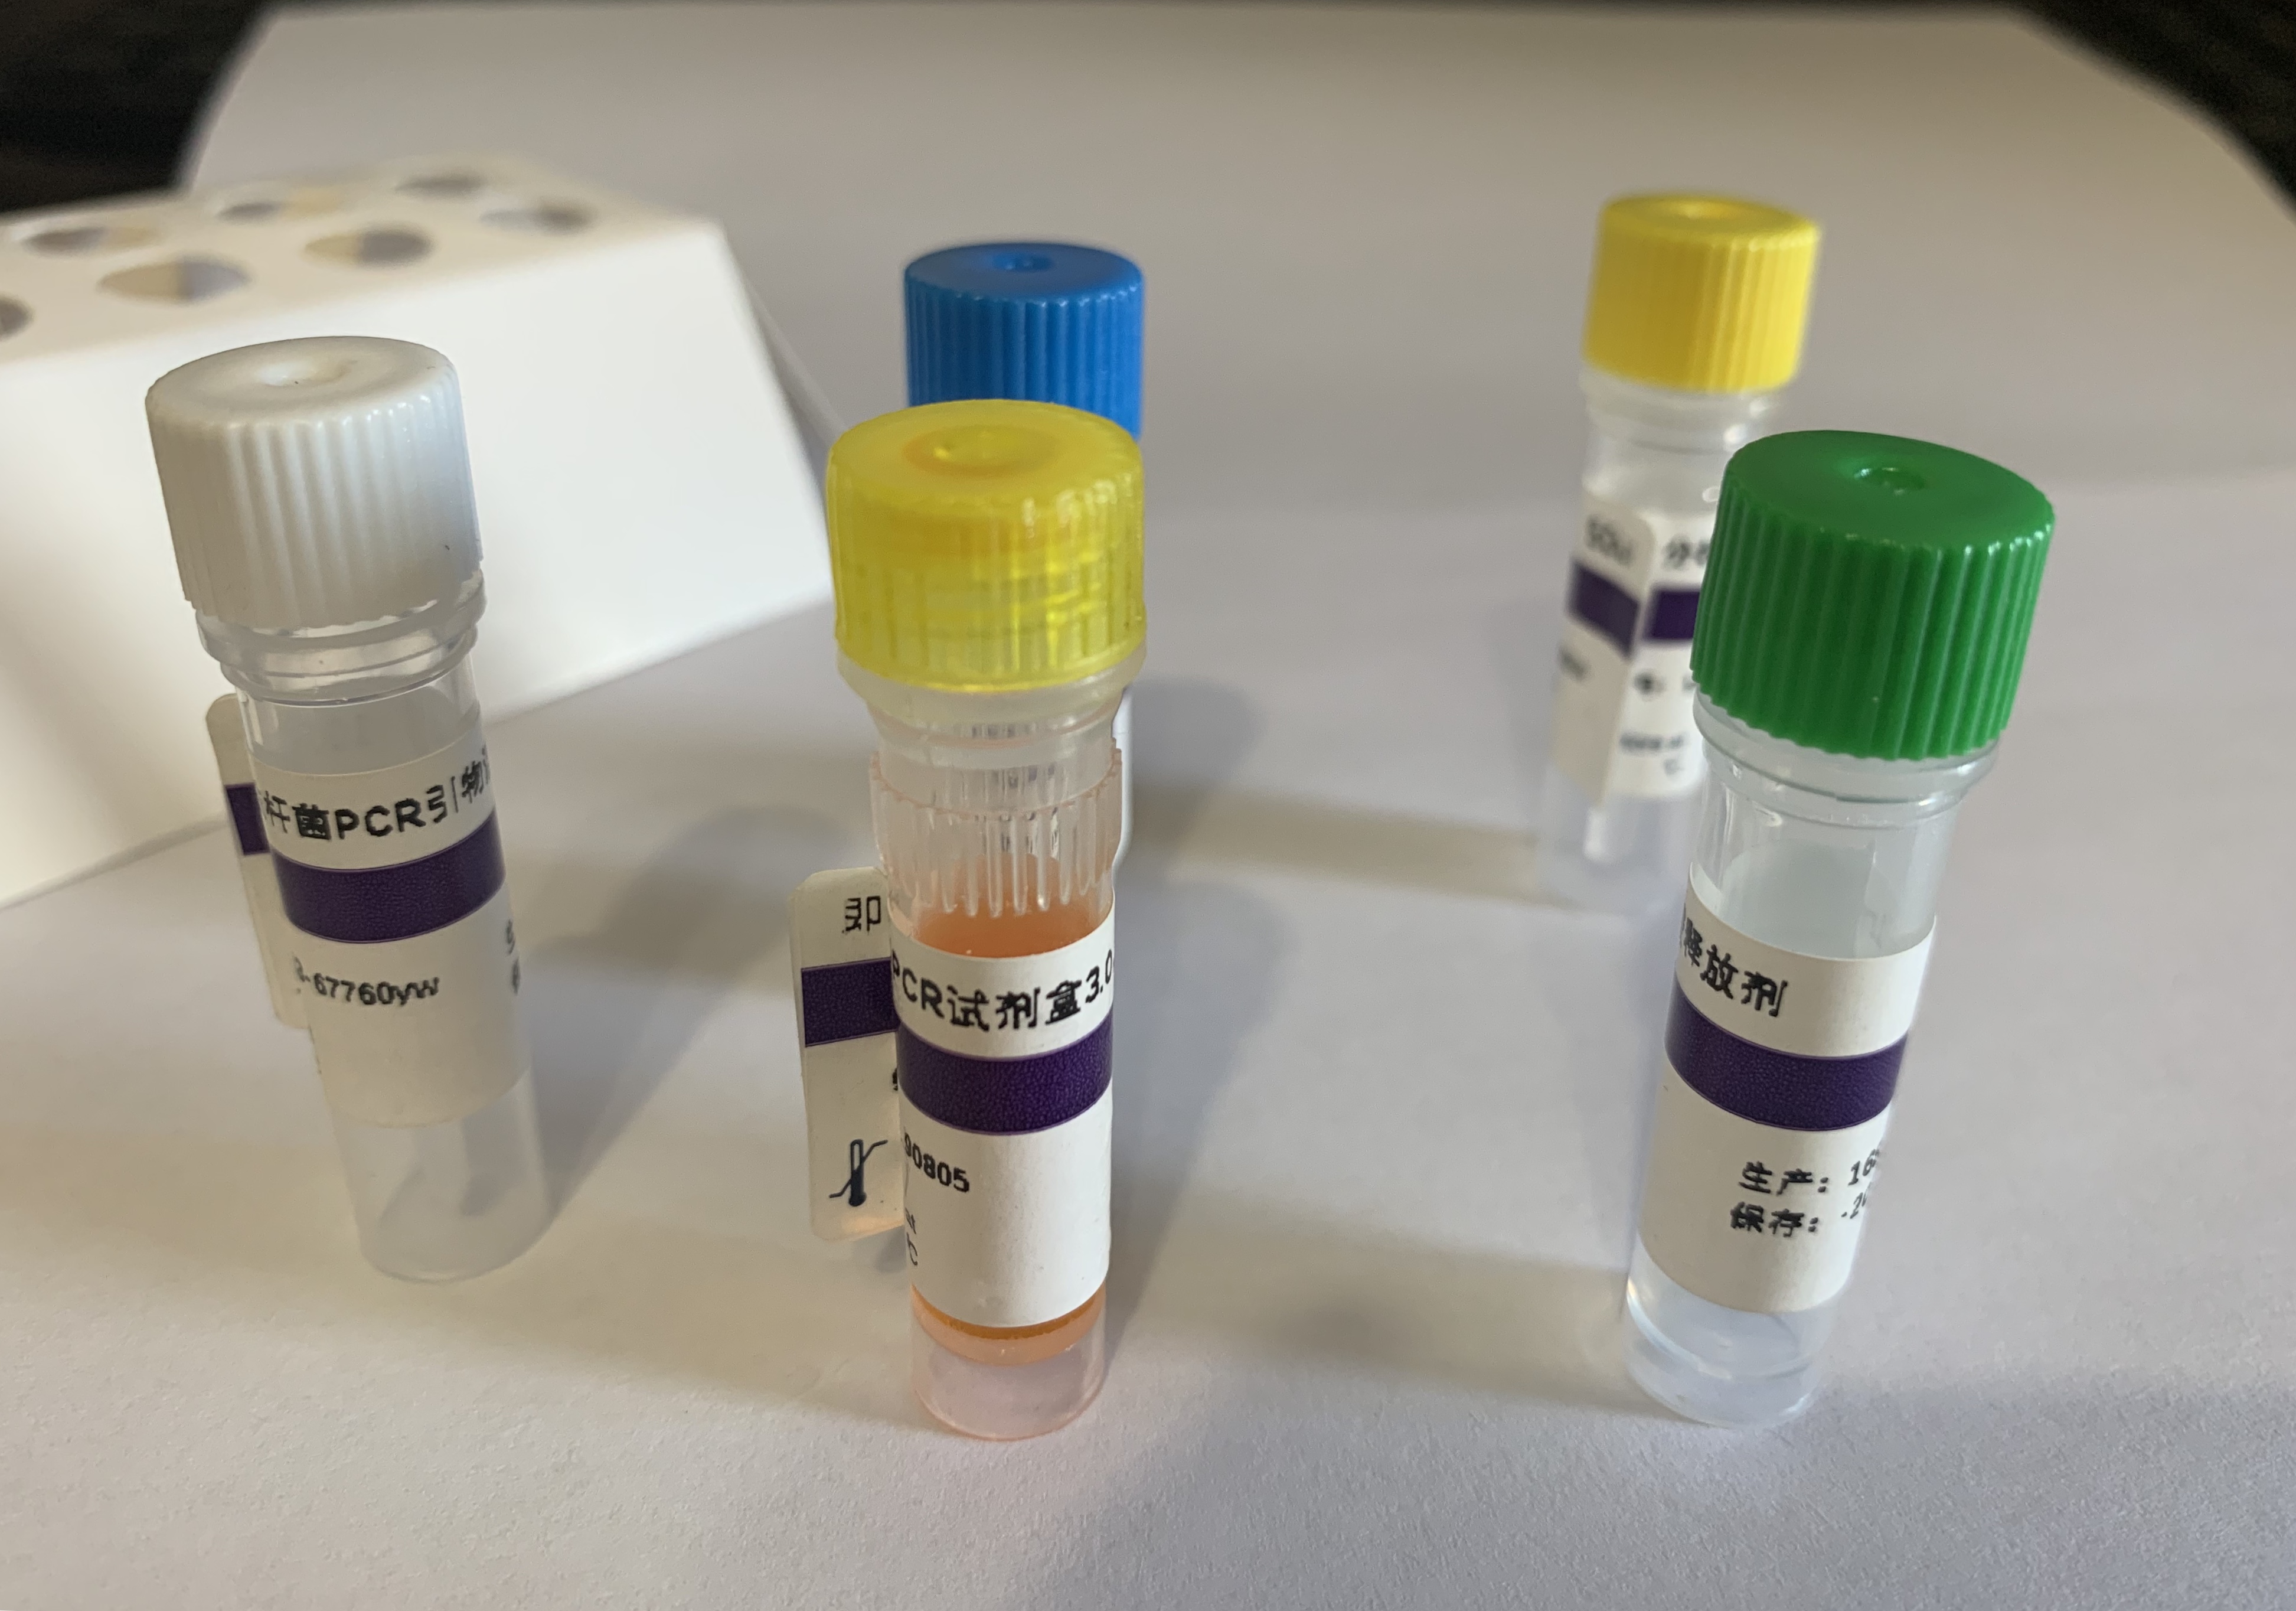 坏死性肝胰腺炎细菌(NHPB)核酸检测试剂盒(PCR-荧光探针法)